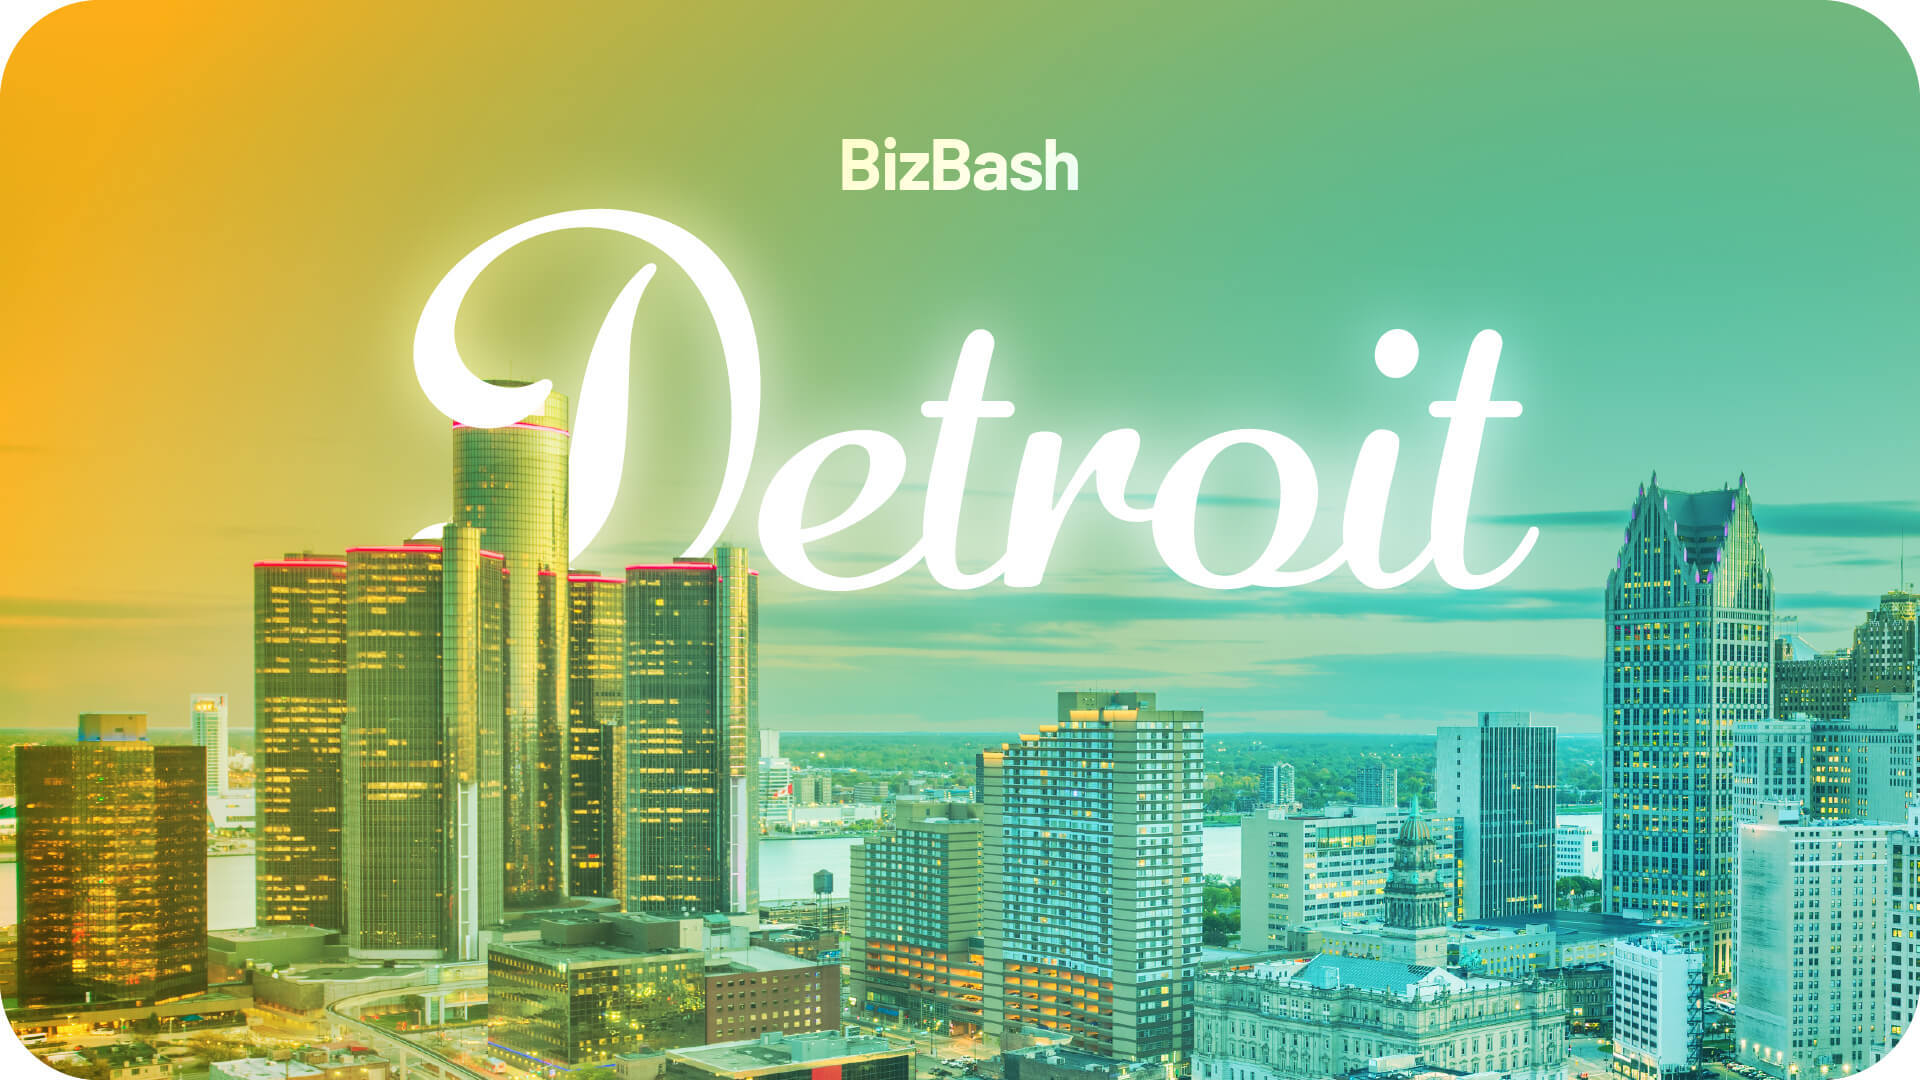 BizBash Detroit Event Technology